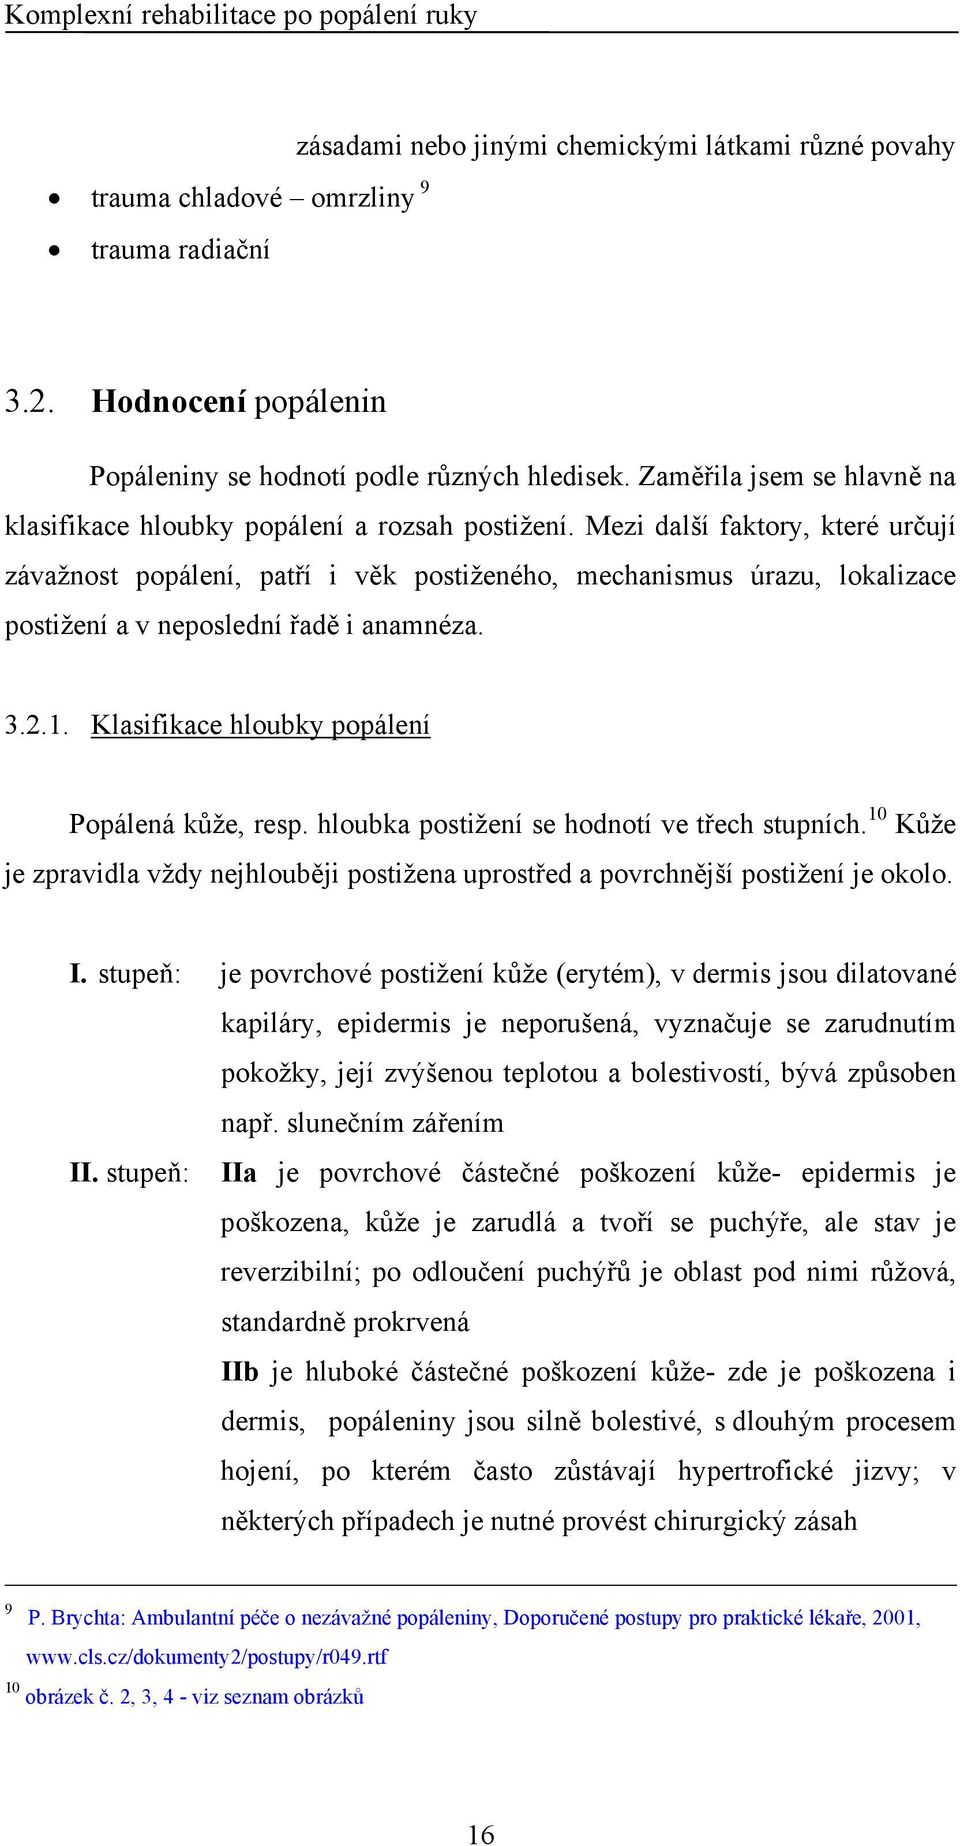 UNIVERZITA KARLOVA V PRAZE 3. LÉKAŘSKÁ FAKULTA - PDF Free Download